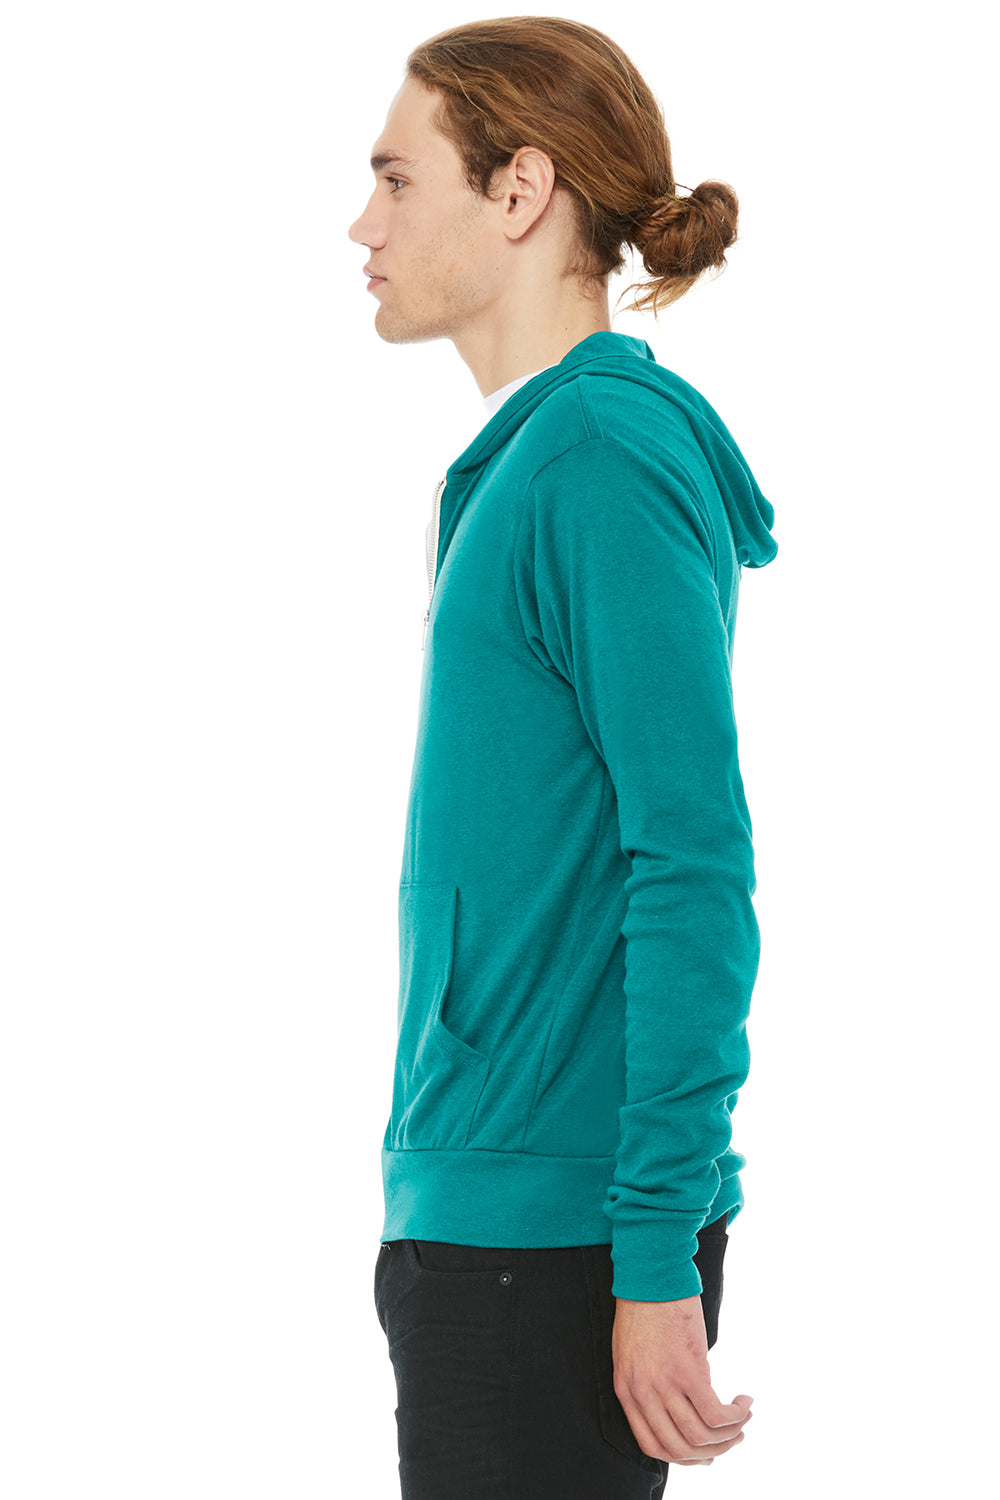 Bella + Canvas BC3939/3939 Mens Full Zip Long Sleeve Hooded T-Shirt Hoodie Teal Green Model Side